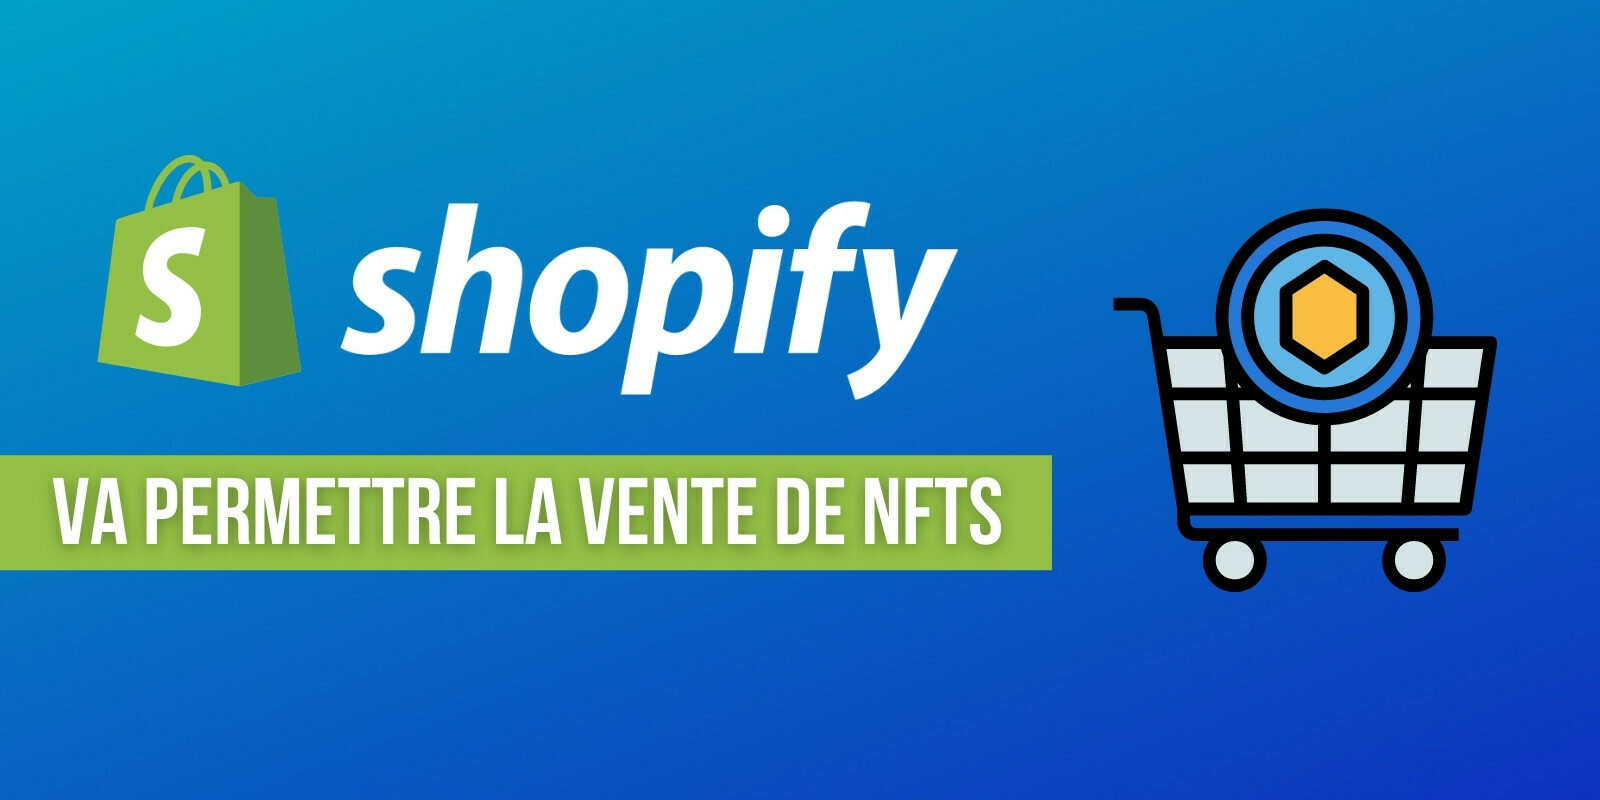 Shopify officialise la possibilité de vendre des tokens non fongibles (NFTs) sur sa plateforme